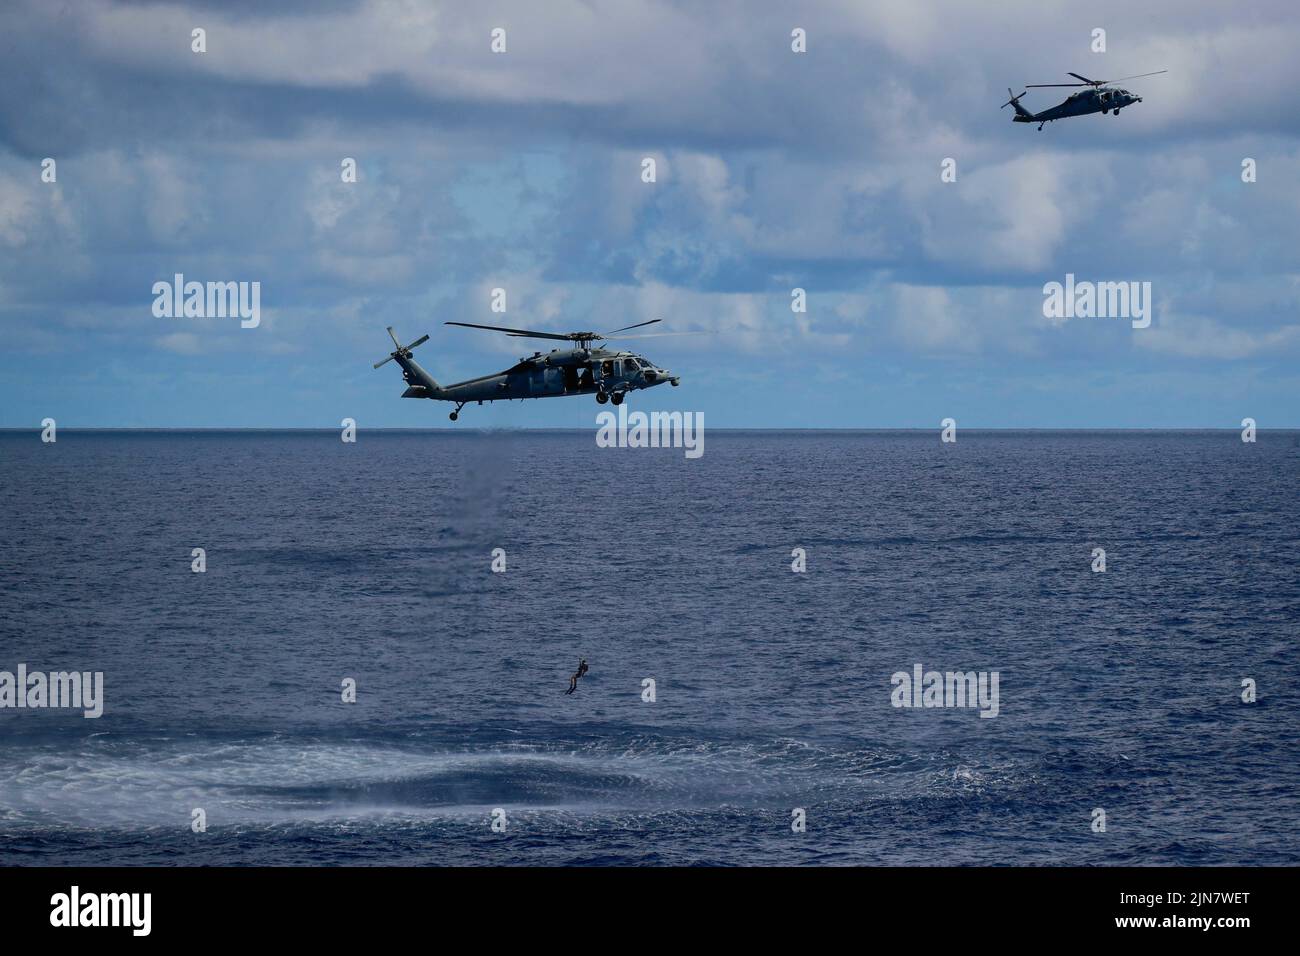 220807-N-CH260-1433 OCÉANO PACÍFICO (AGOSTO 7, 2022) Dos helicópteros MH-60s Sea Hawk, ambos asignados a los “Chargers” del Escuadrón de Combate Marítimo de Helicópteros (HSC) 14, realizan una búsqueda simulada y rescate junto al portaaviones de clase Nimitz USS Abraham Lincoln (CVN 72) durante una demostración de potencia aérea para los huéspedes embarcados. El Abraham Lincoln Carrier Strike Group está llevando a cabo operaciones rutinarias en la Flota 3rd de los Estados Unidos. (EE. UU Foto de la Marina por el Especialista en Comunicación de Masas 3rd Clase Kassandra Alanis) Foto de stock